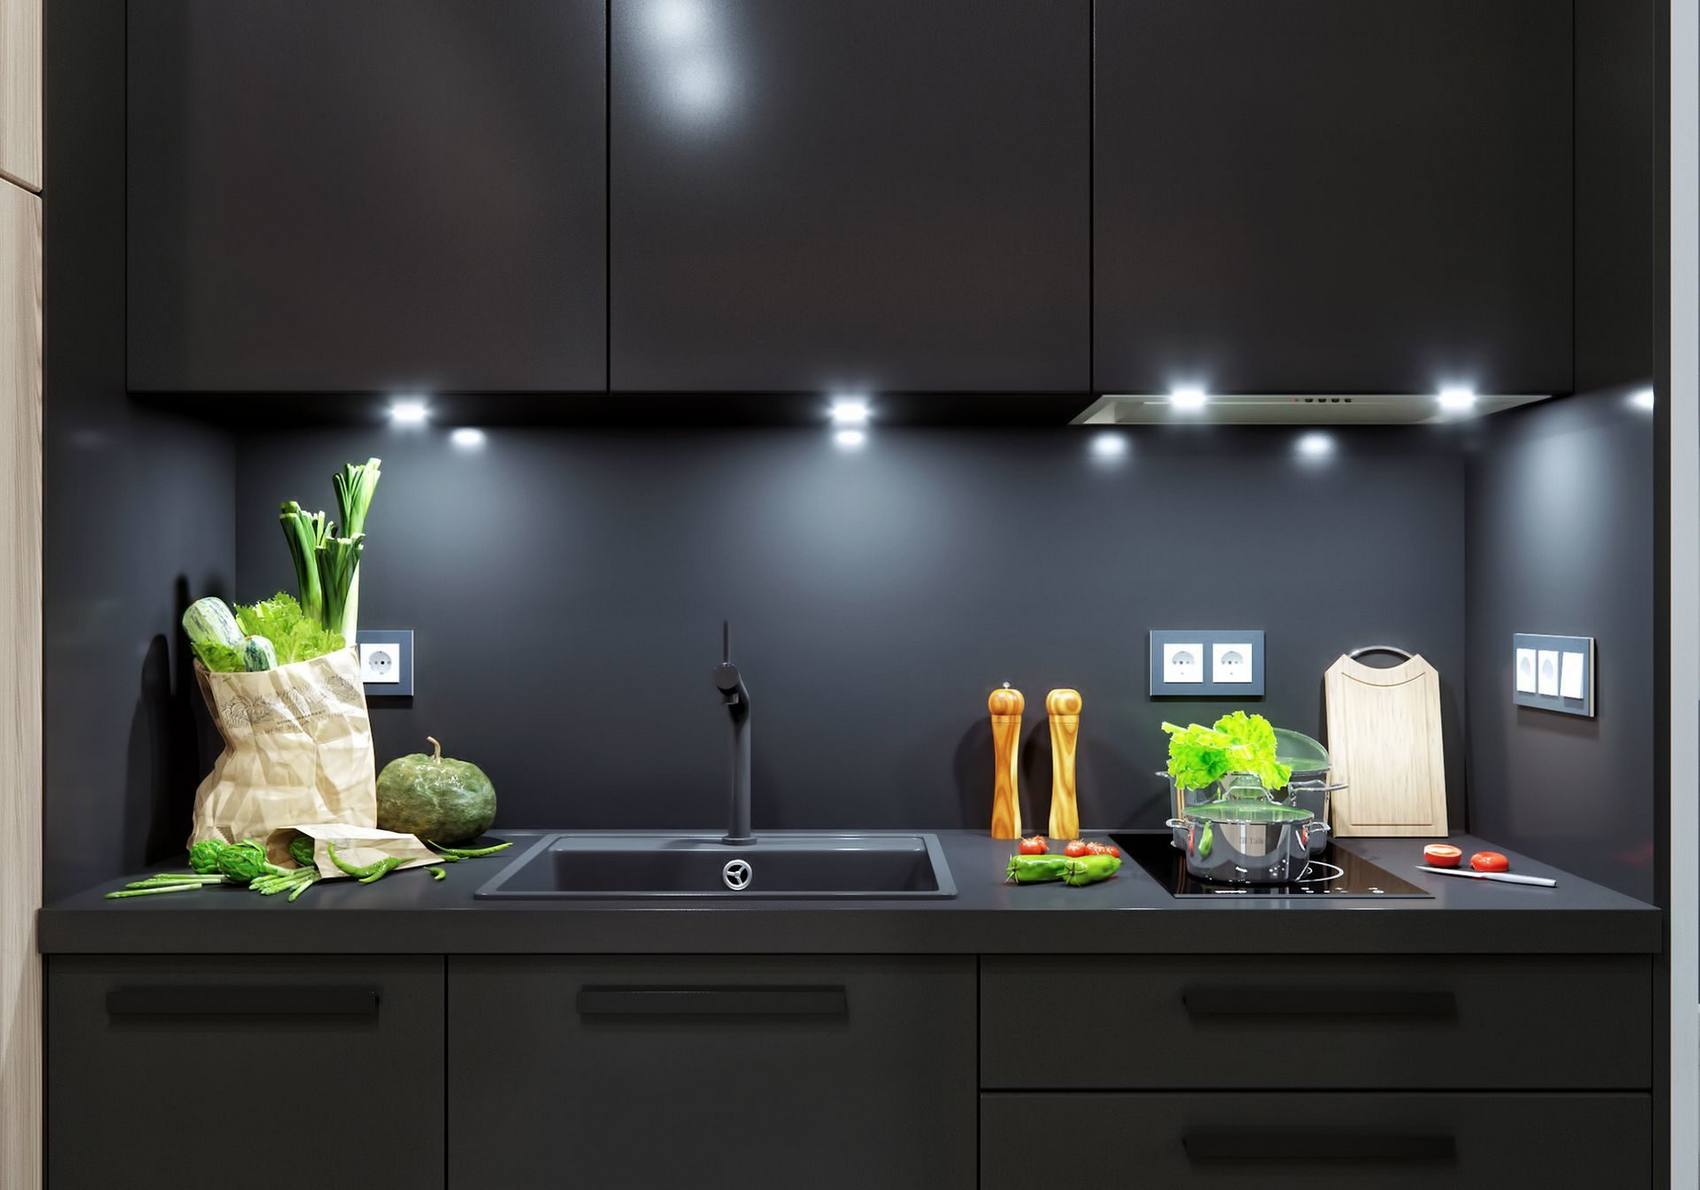 Tại khu vực nấu nướng, toàn bộ hệ thống tủ lưu trữ trên và dưới, cả backsplash đều sử dụng duy nhất tone màu đen. Lựa chọn này không chỉ đi theo gam màu chủ đạo của căn hộ mà còn giúp bếp luôn sạch sẽ, thể hiện vẻ nam tính, đồng thời NTK cũng tích hợp đèn gầm để tăng cường ánh sáng cho khu vực này.